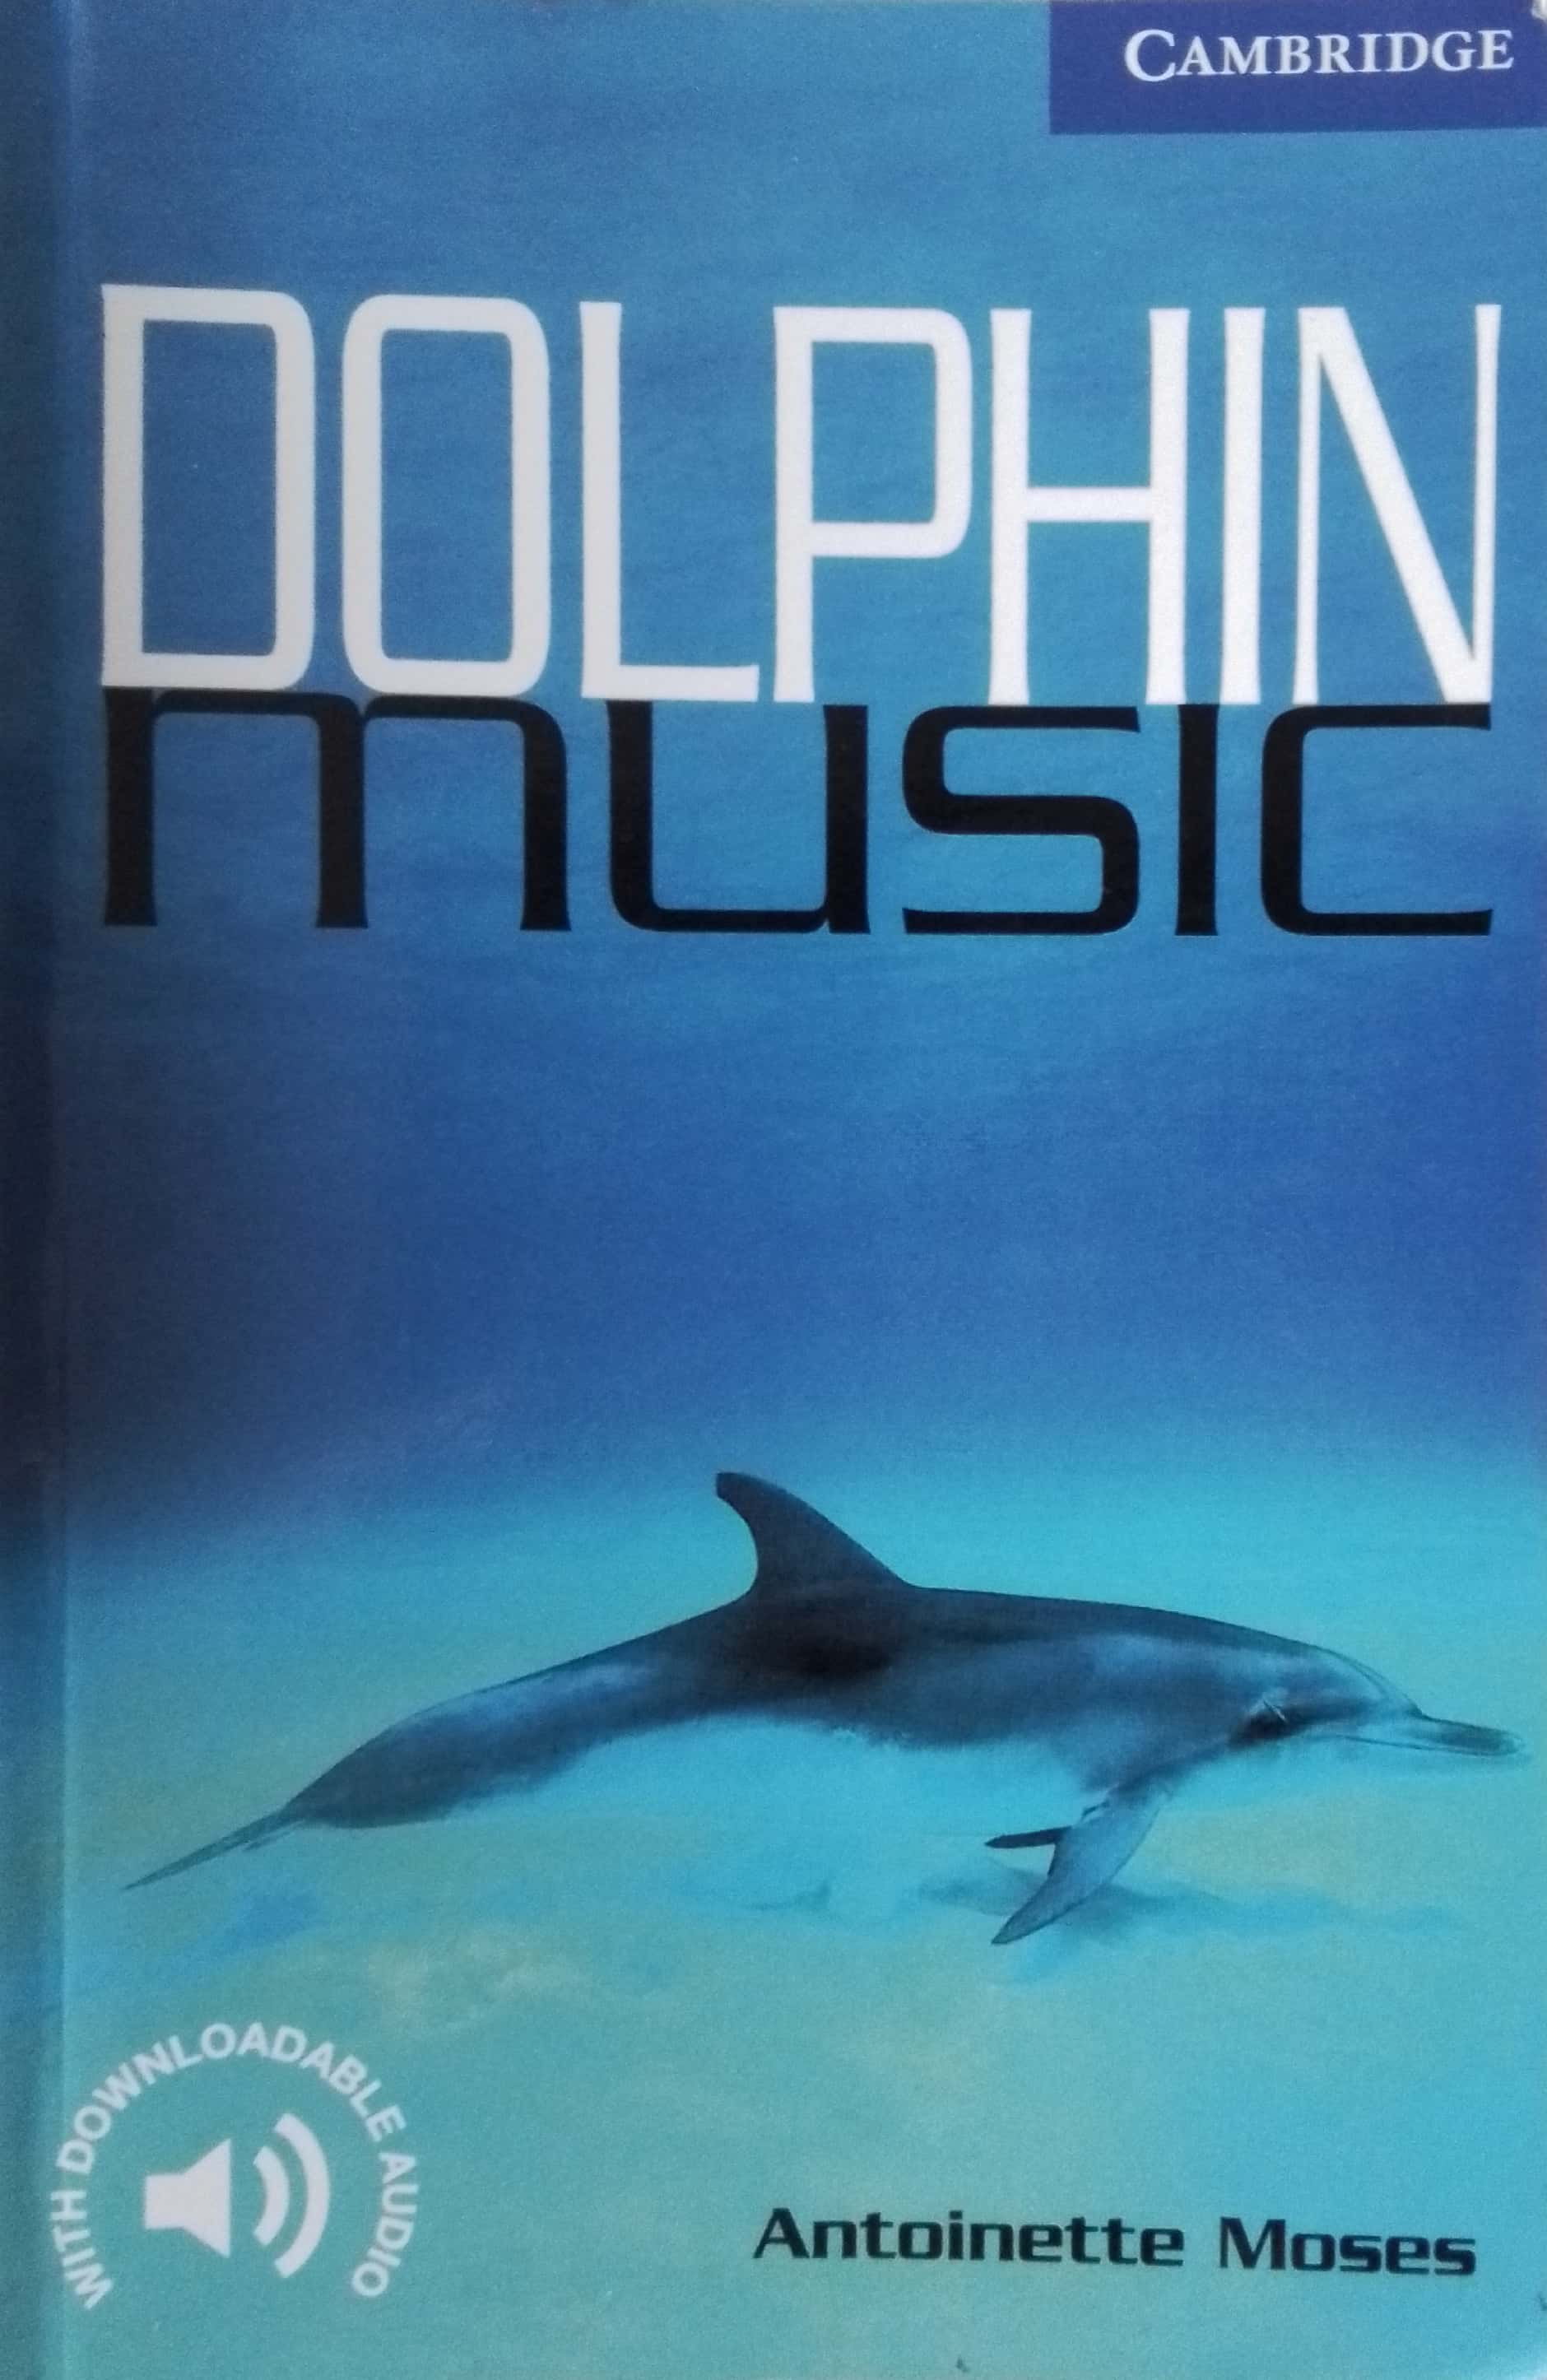 Copertina di Dolphin music